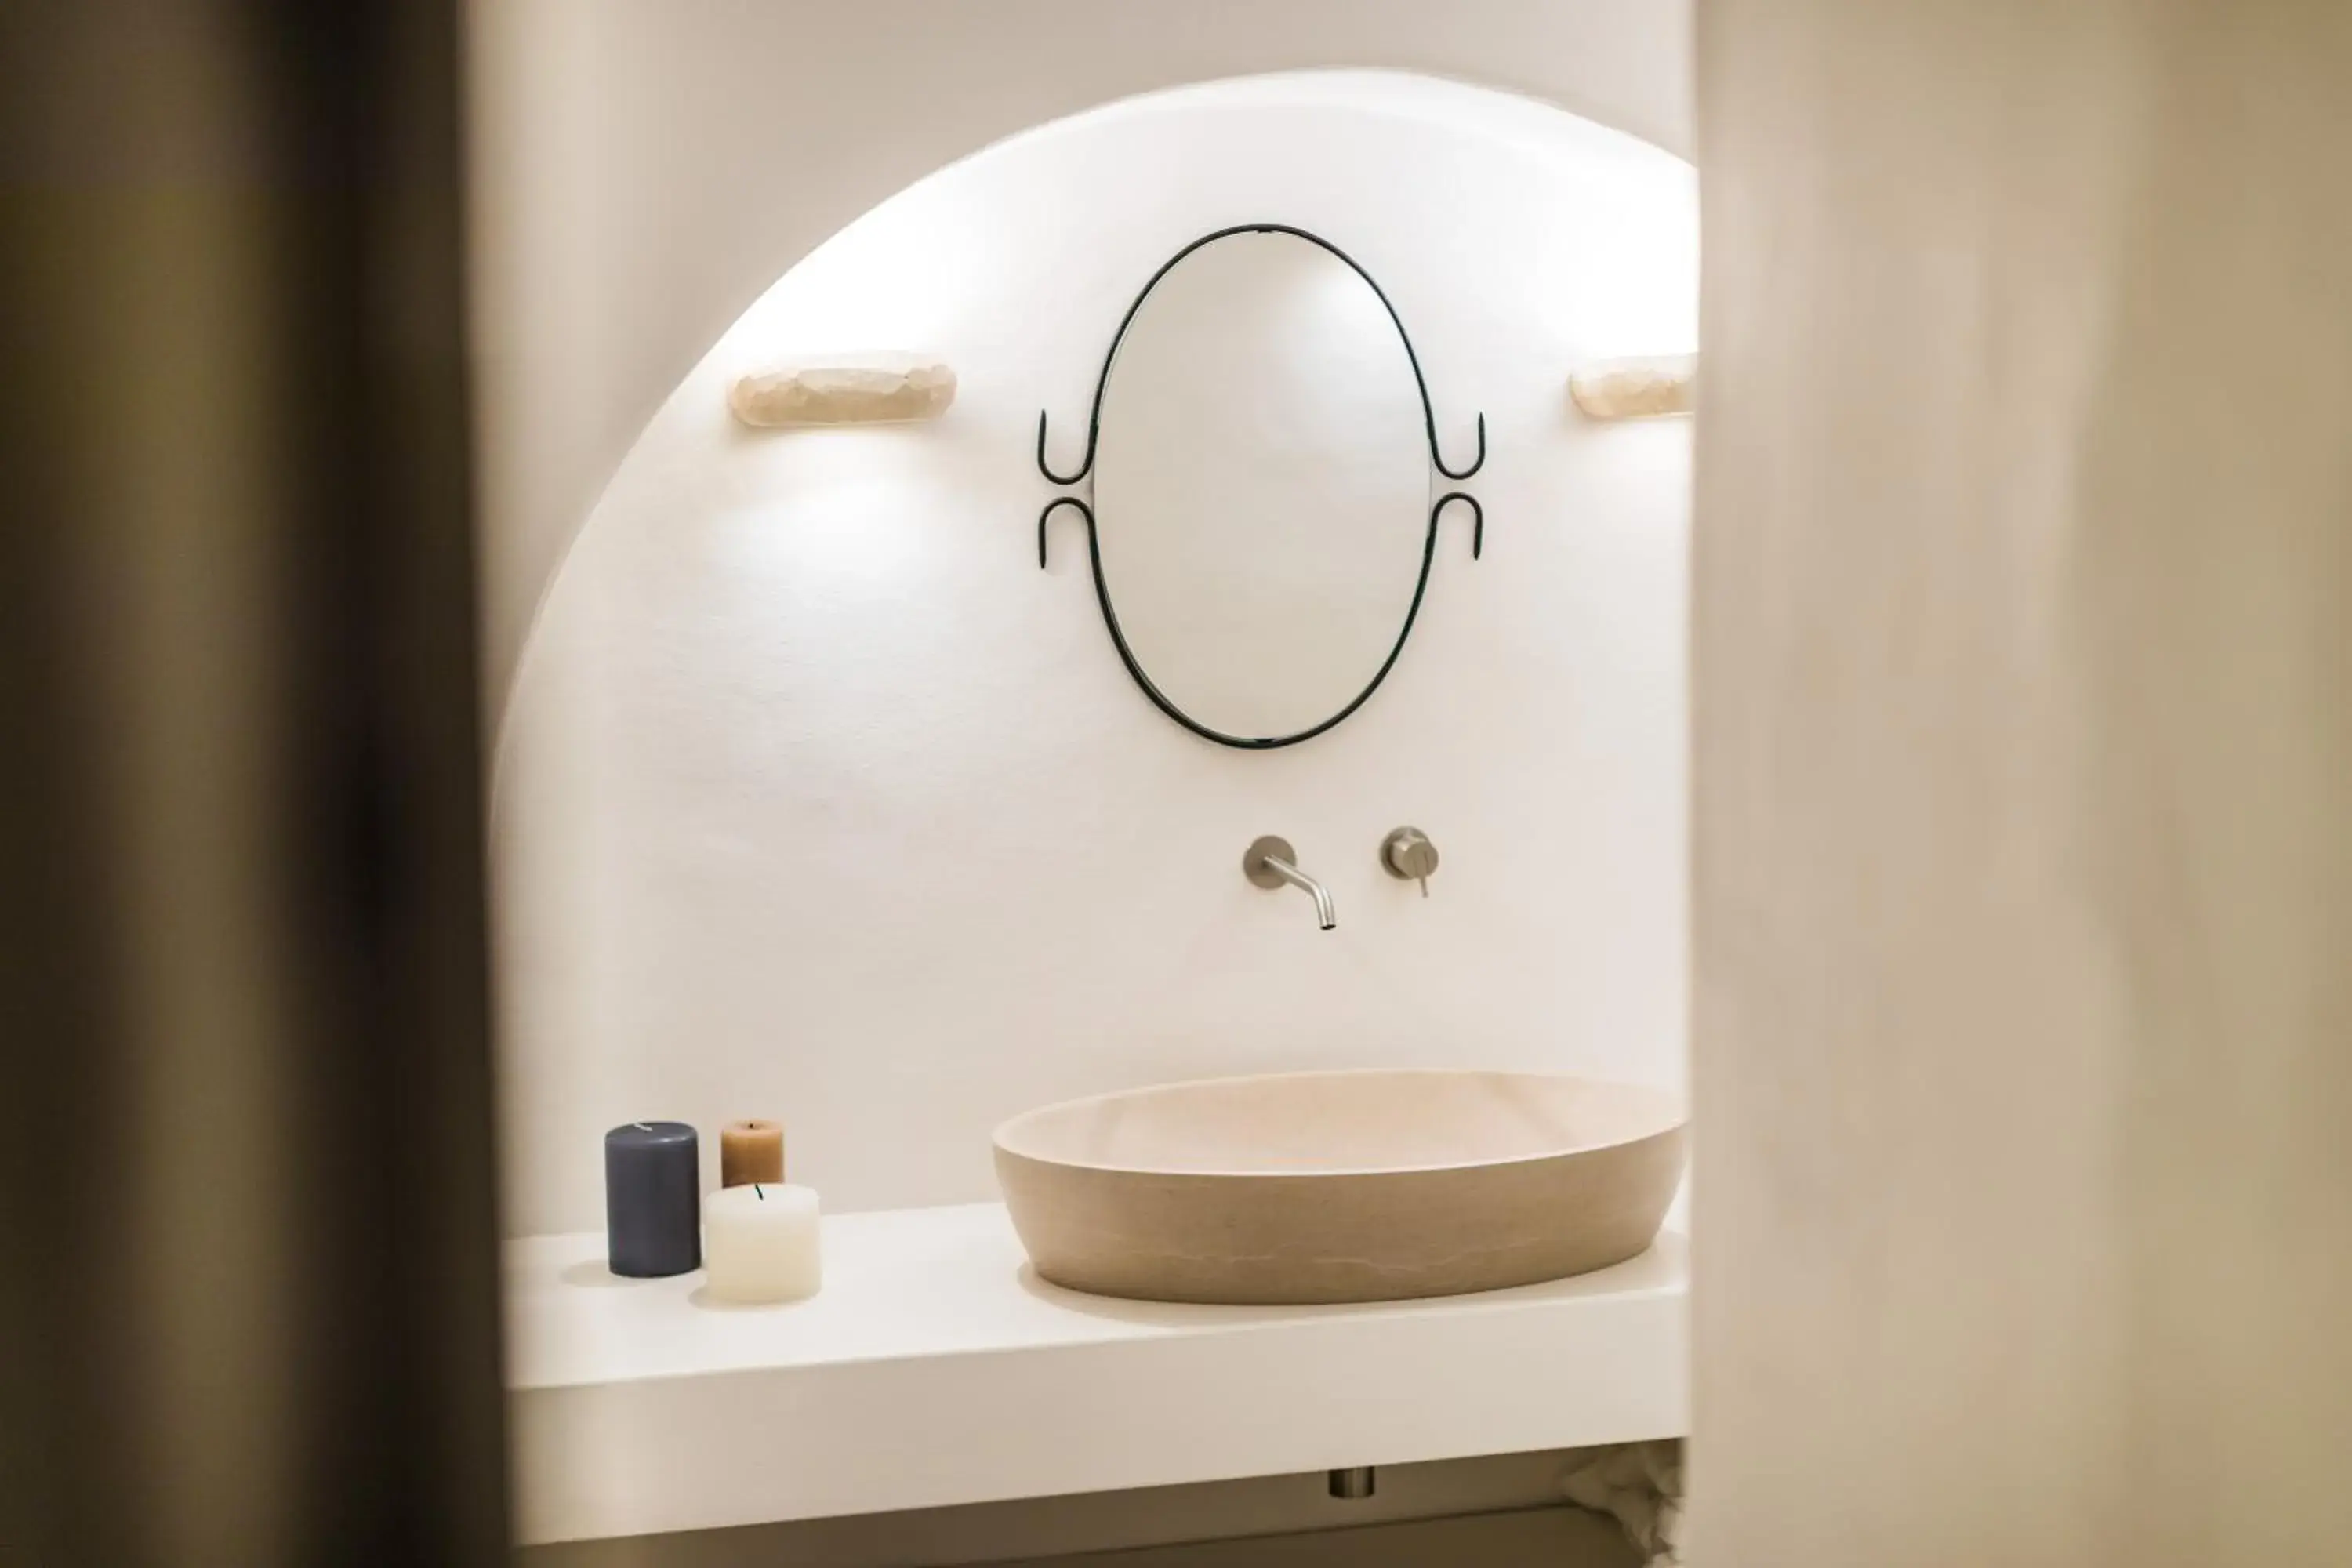 Bathroom in Borgo Canonica